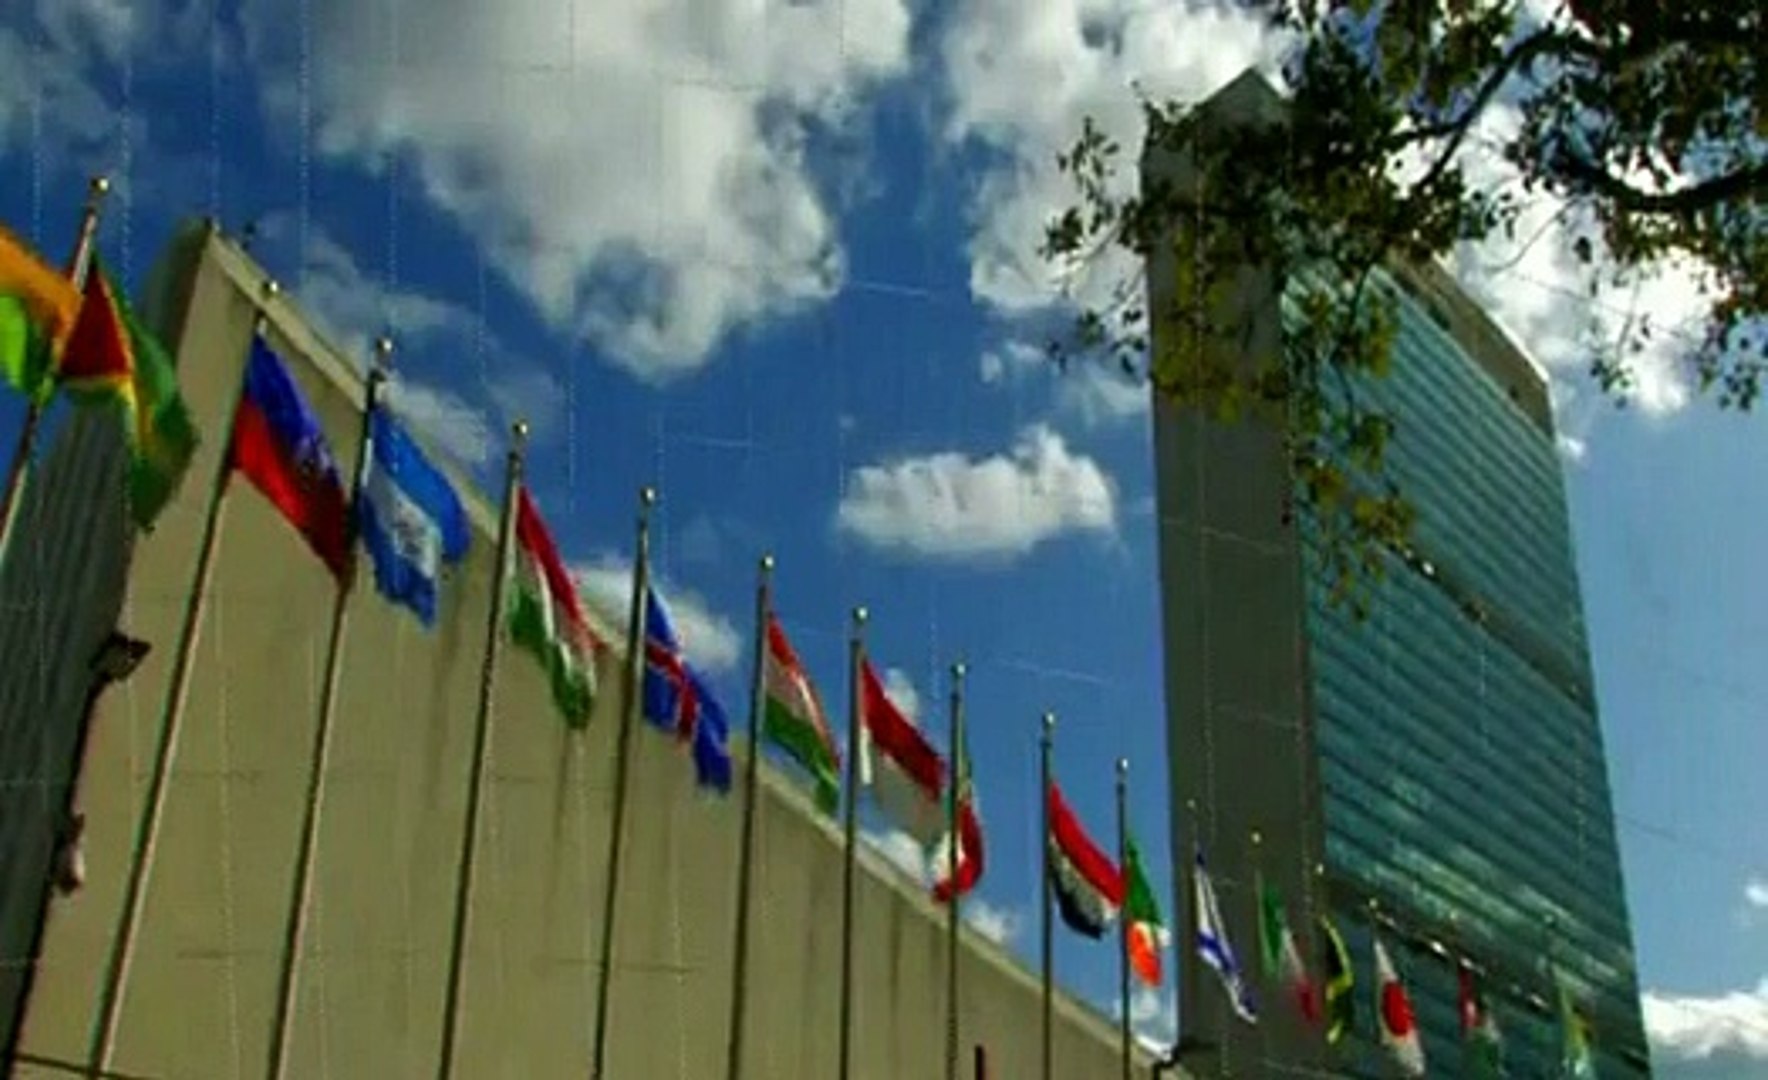 UN Statement pak india loc clashes